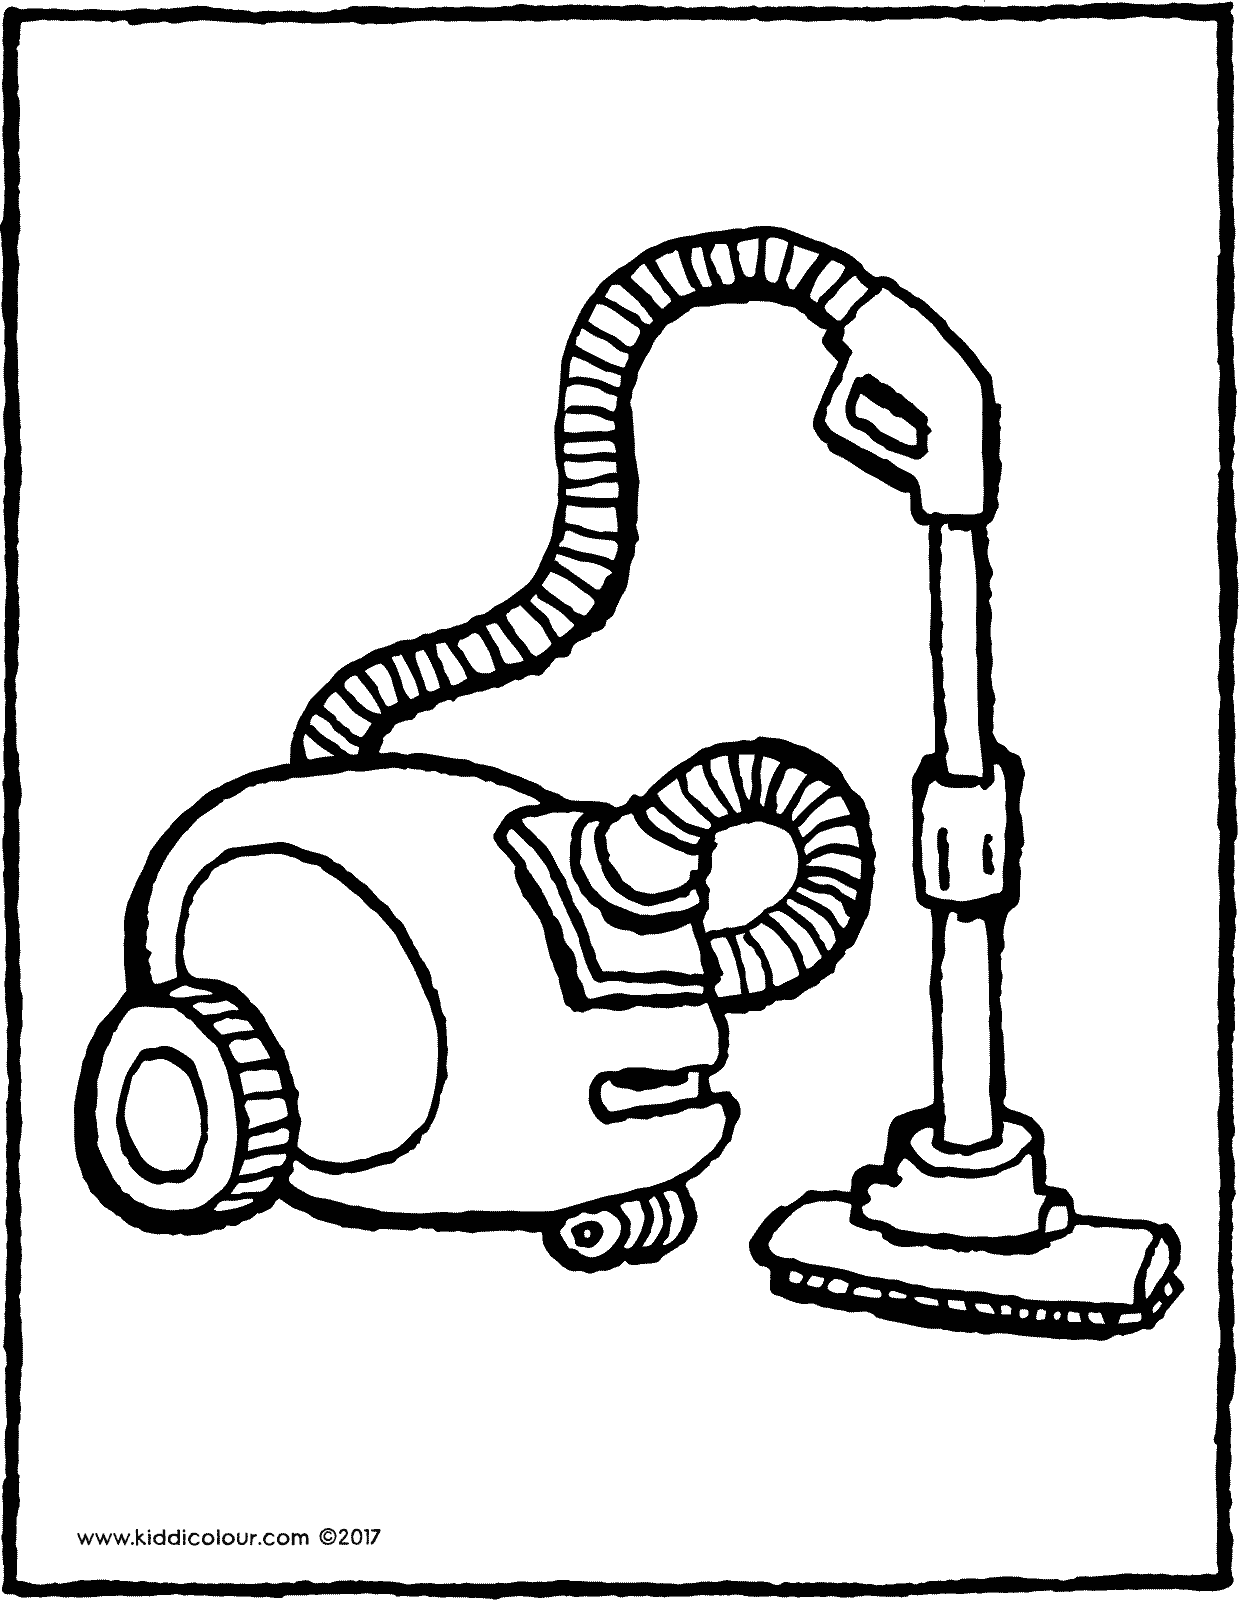 vacuum cleaner - kiddicolourkiddicolour.com